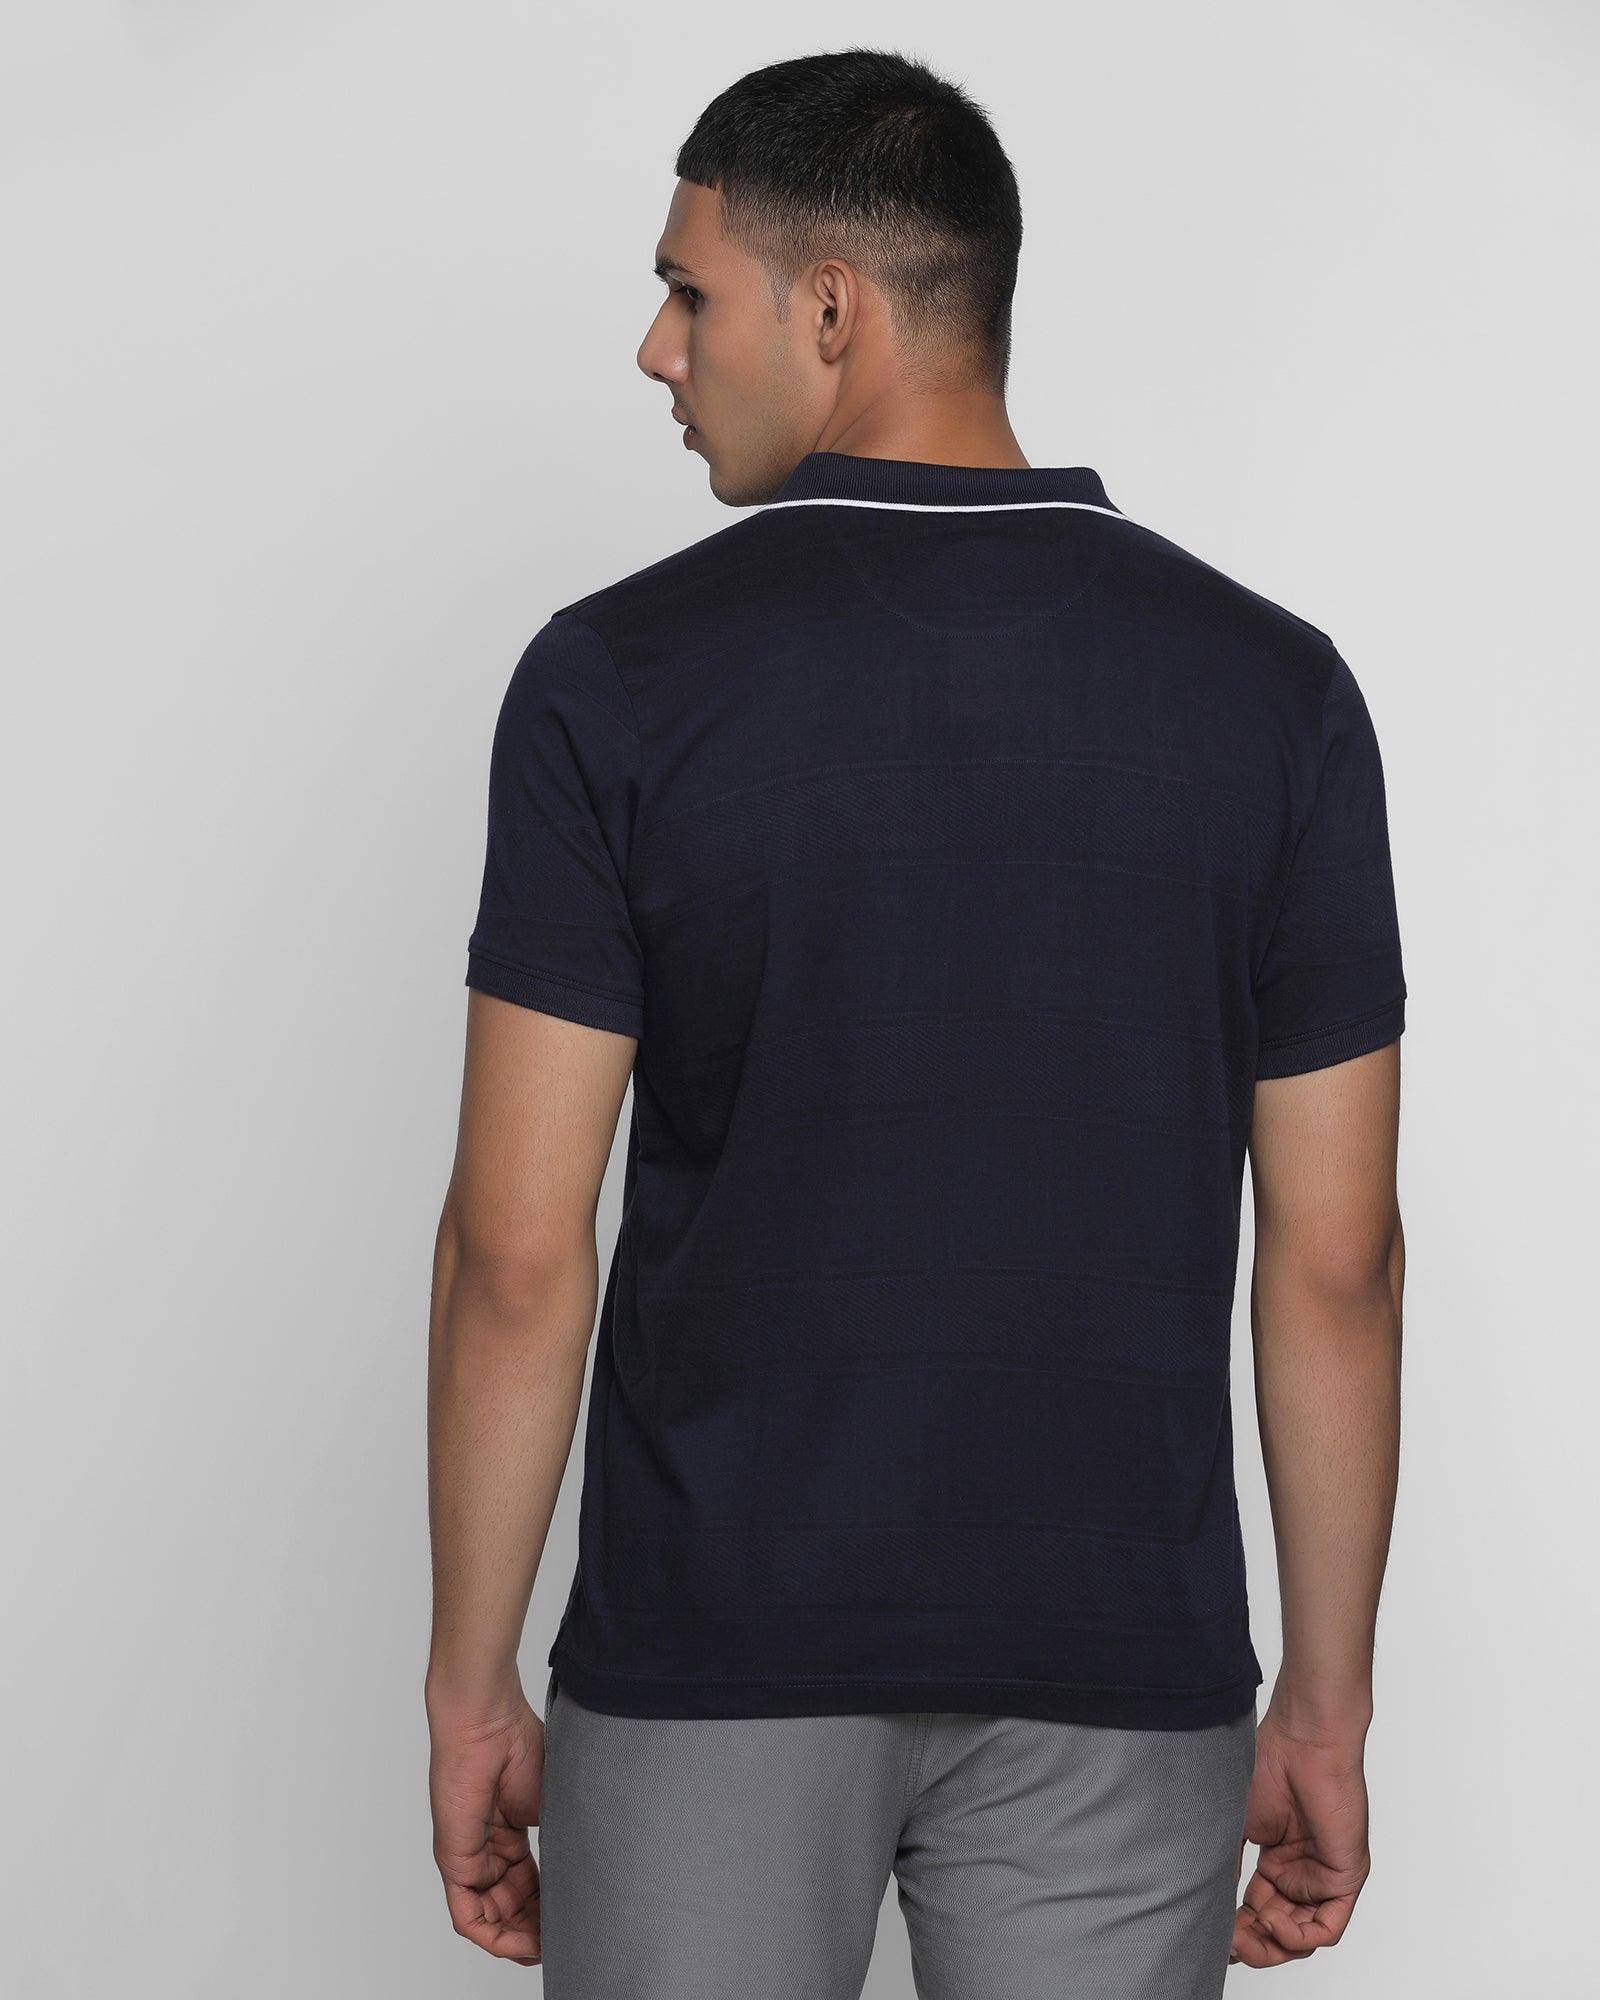 Polo Navy Textured T Shirt - Tyrant